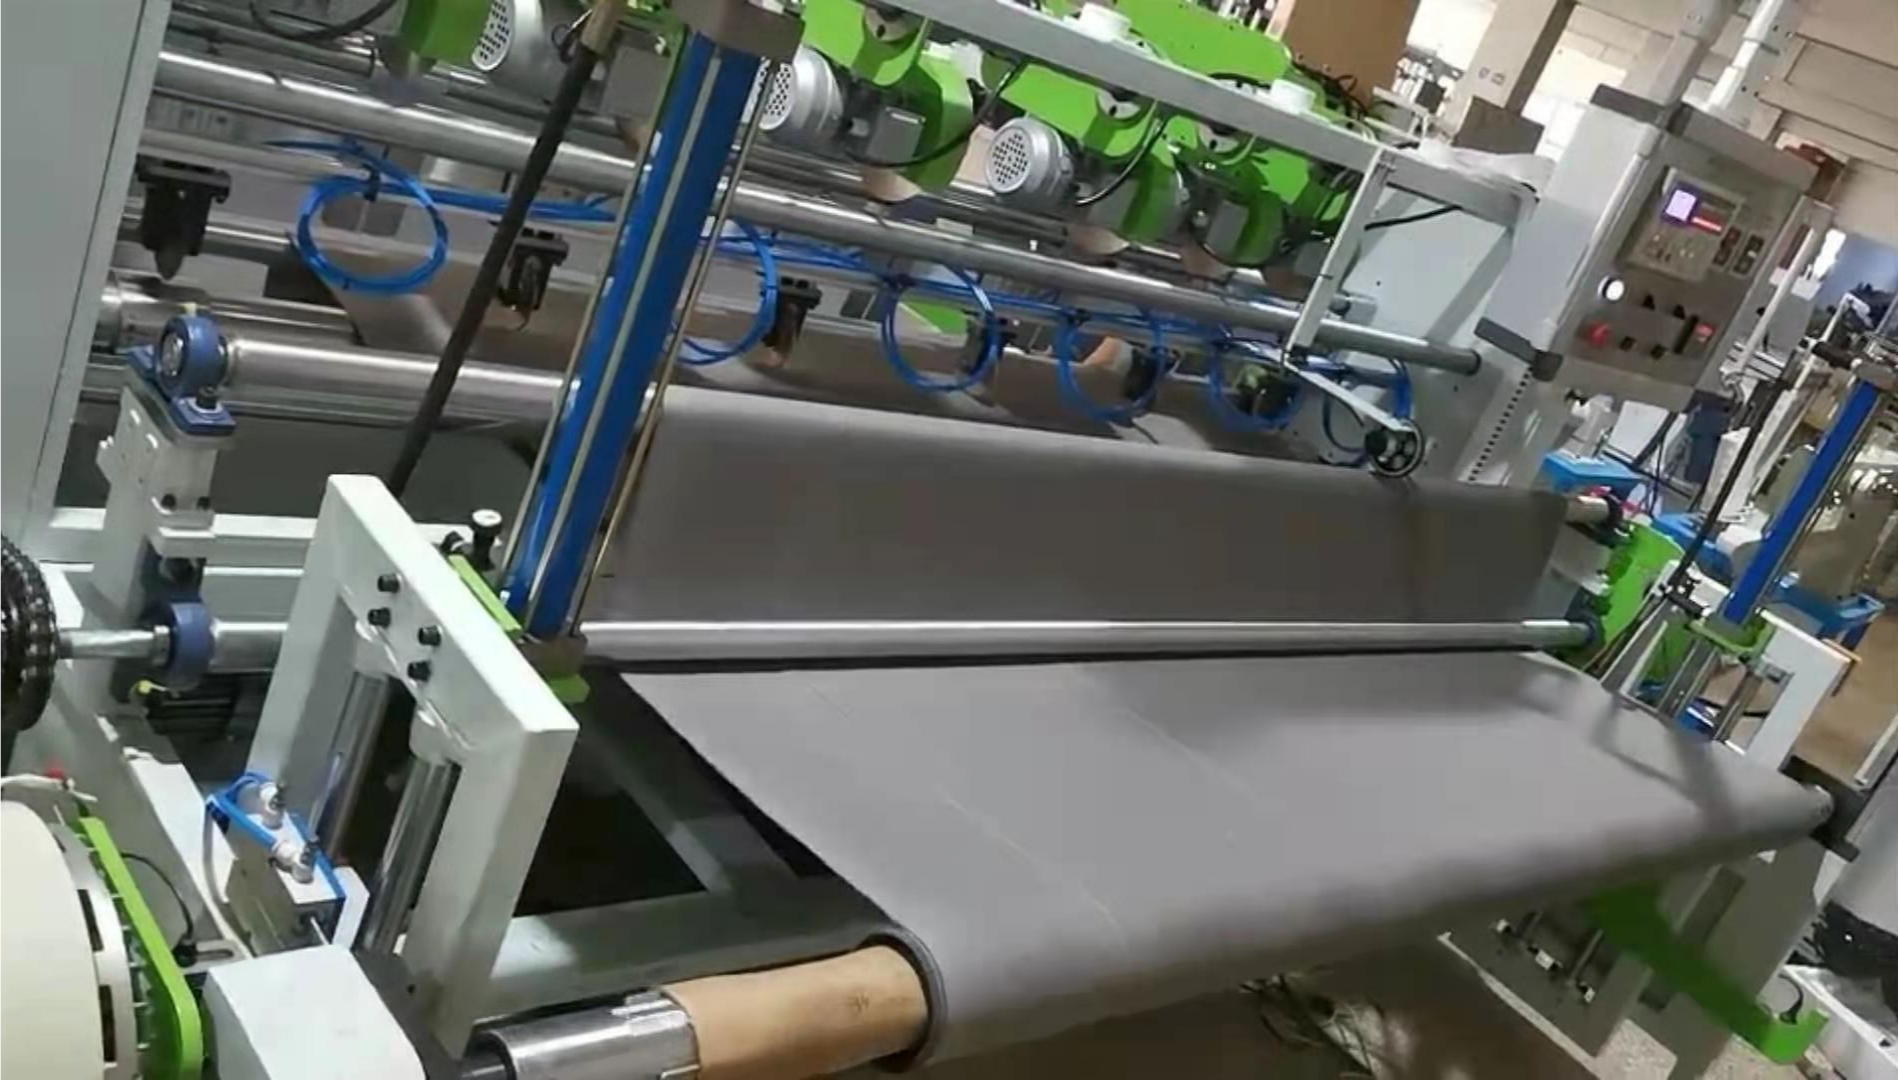 Filter Bag Roll Cutting Machine SQ-2600-1